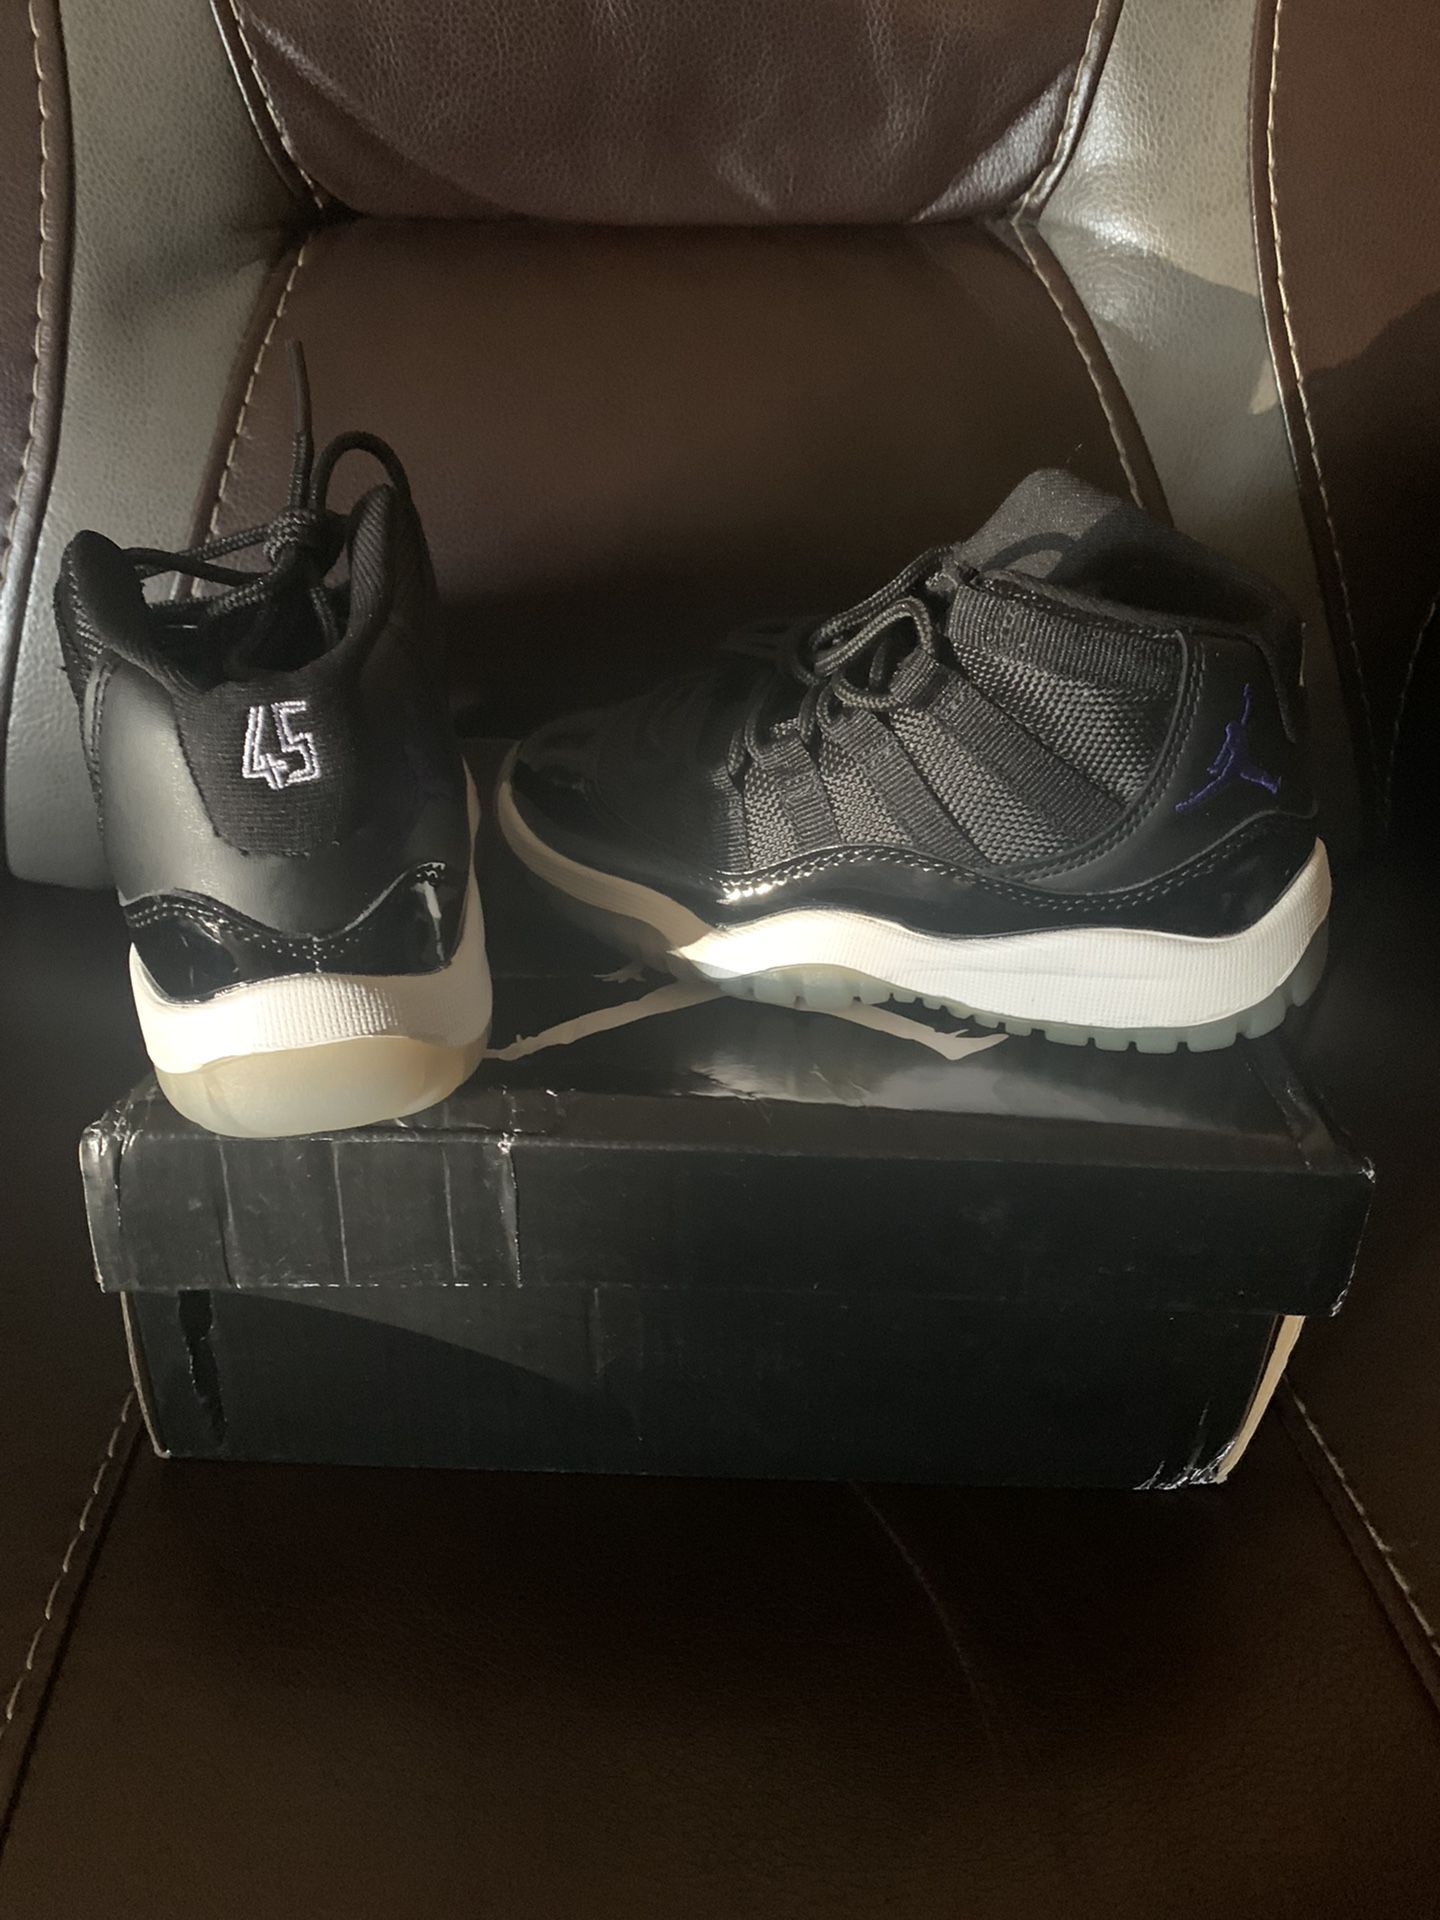 Jordan 11 Size 12c 